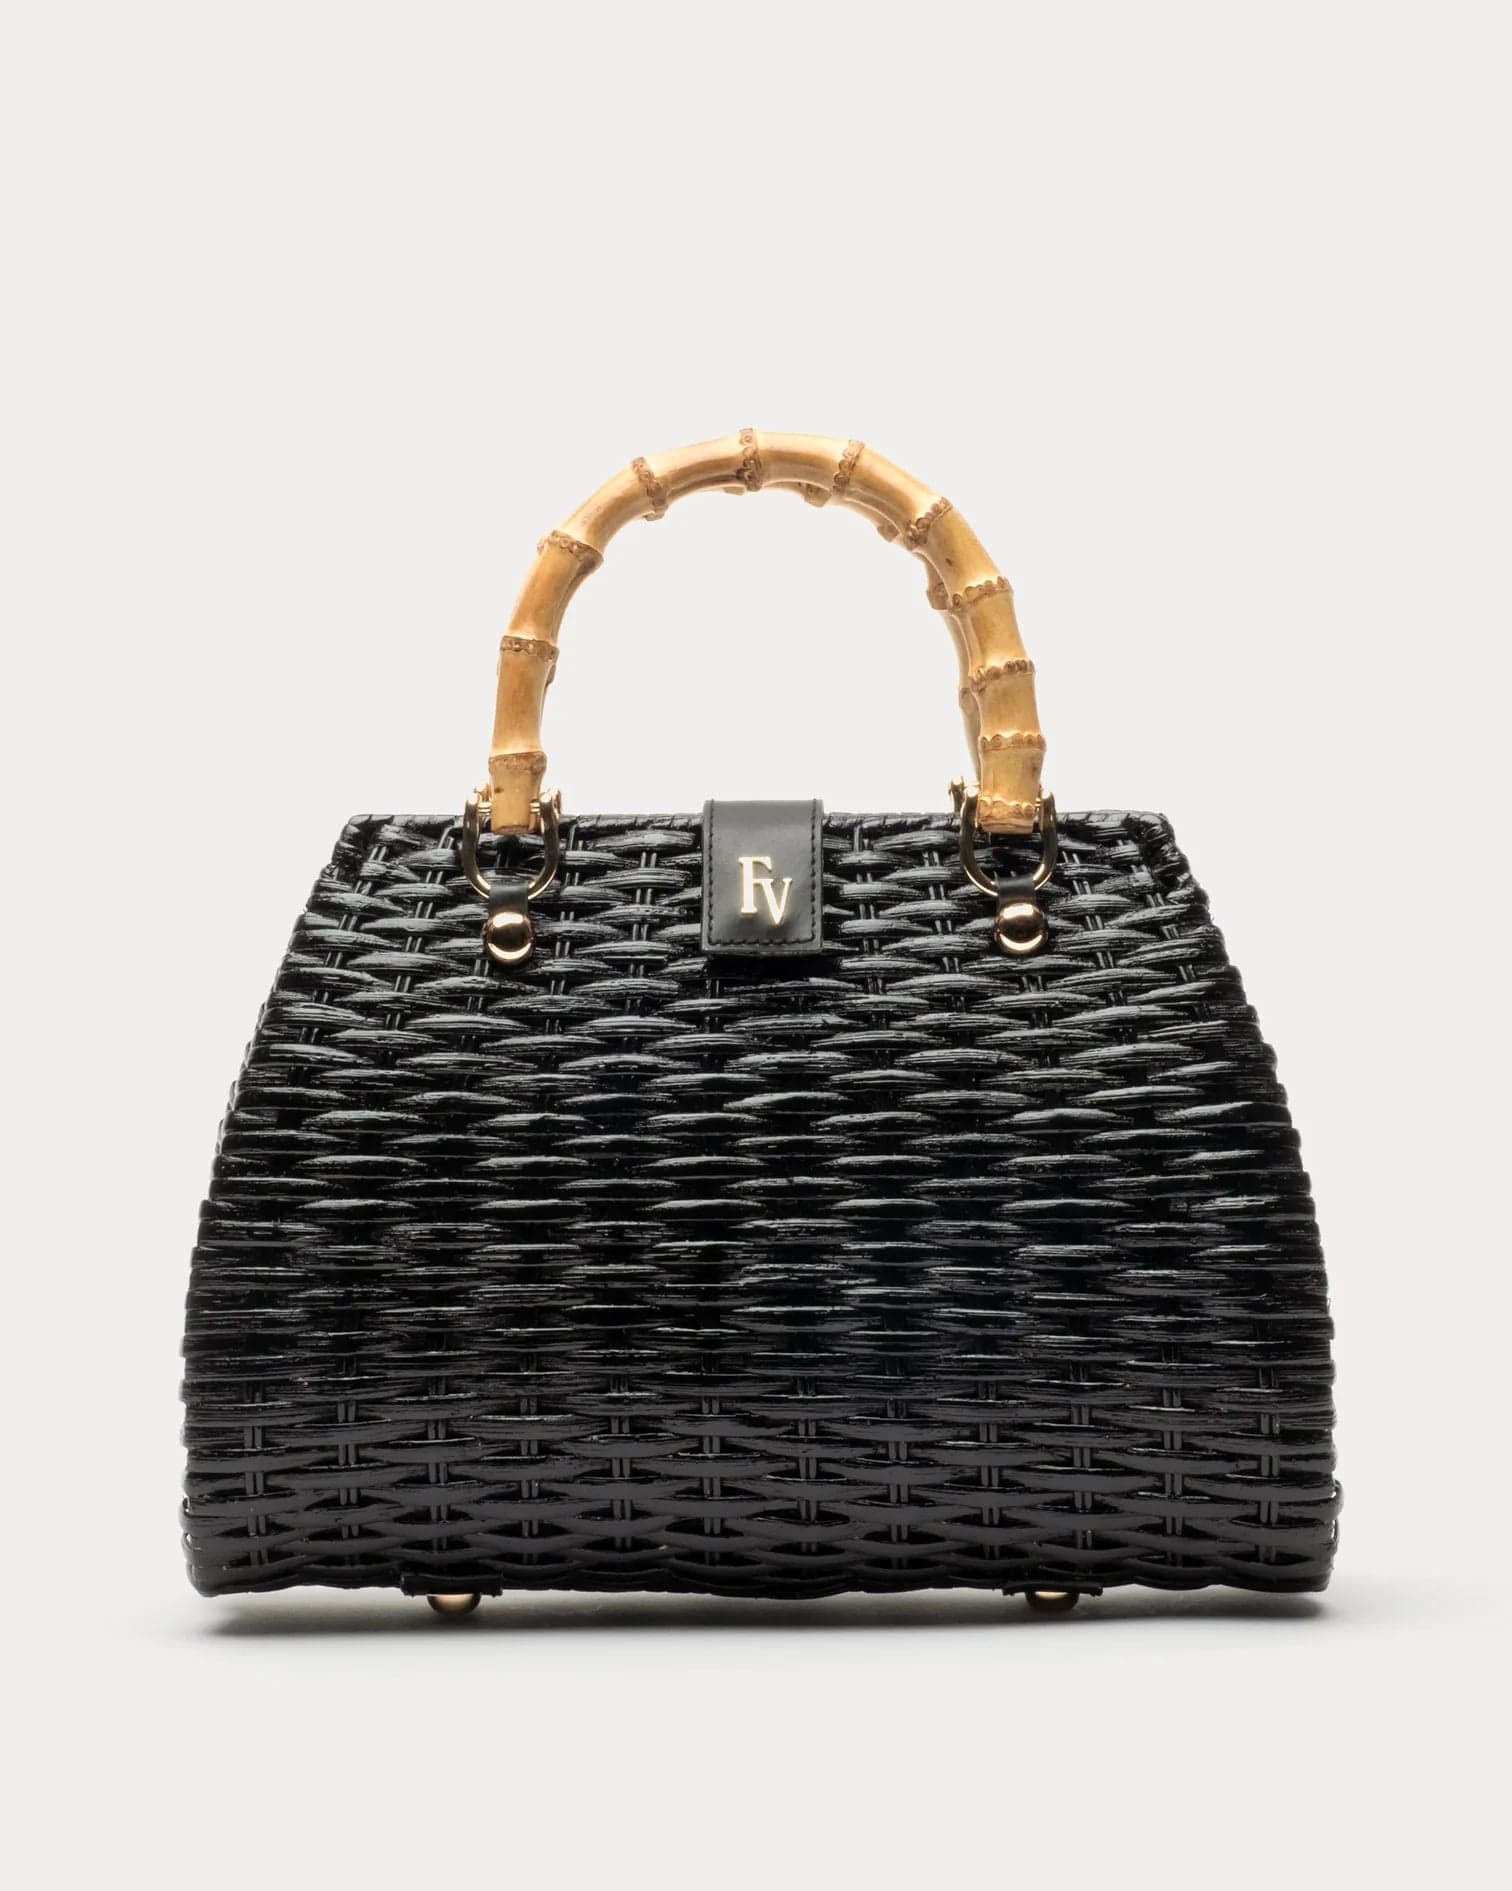 Frances Valentine Handbags Black Frances Valentine Rooster Basket Handbag